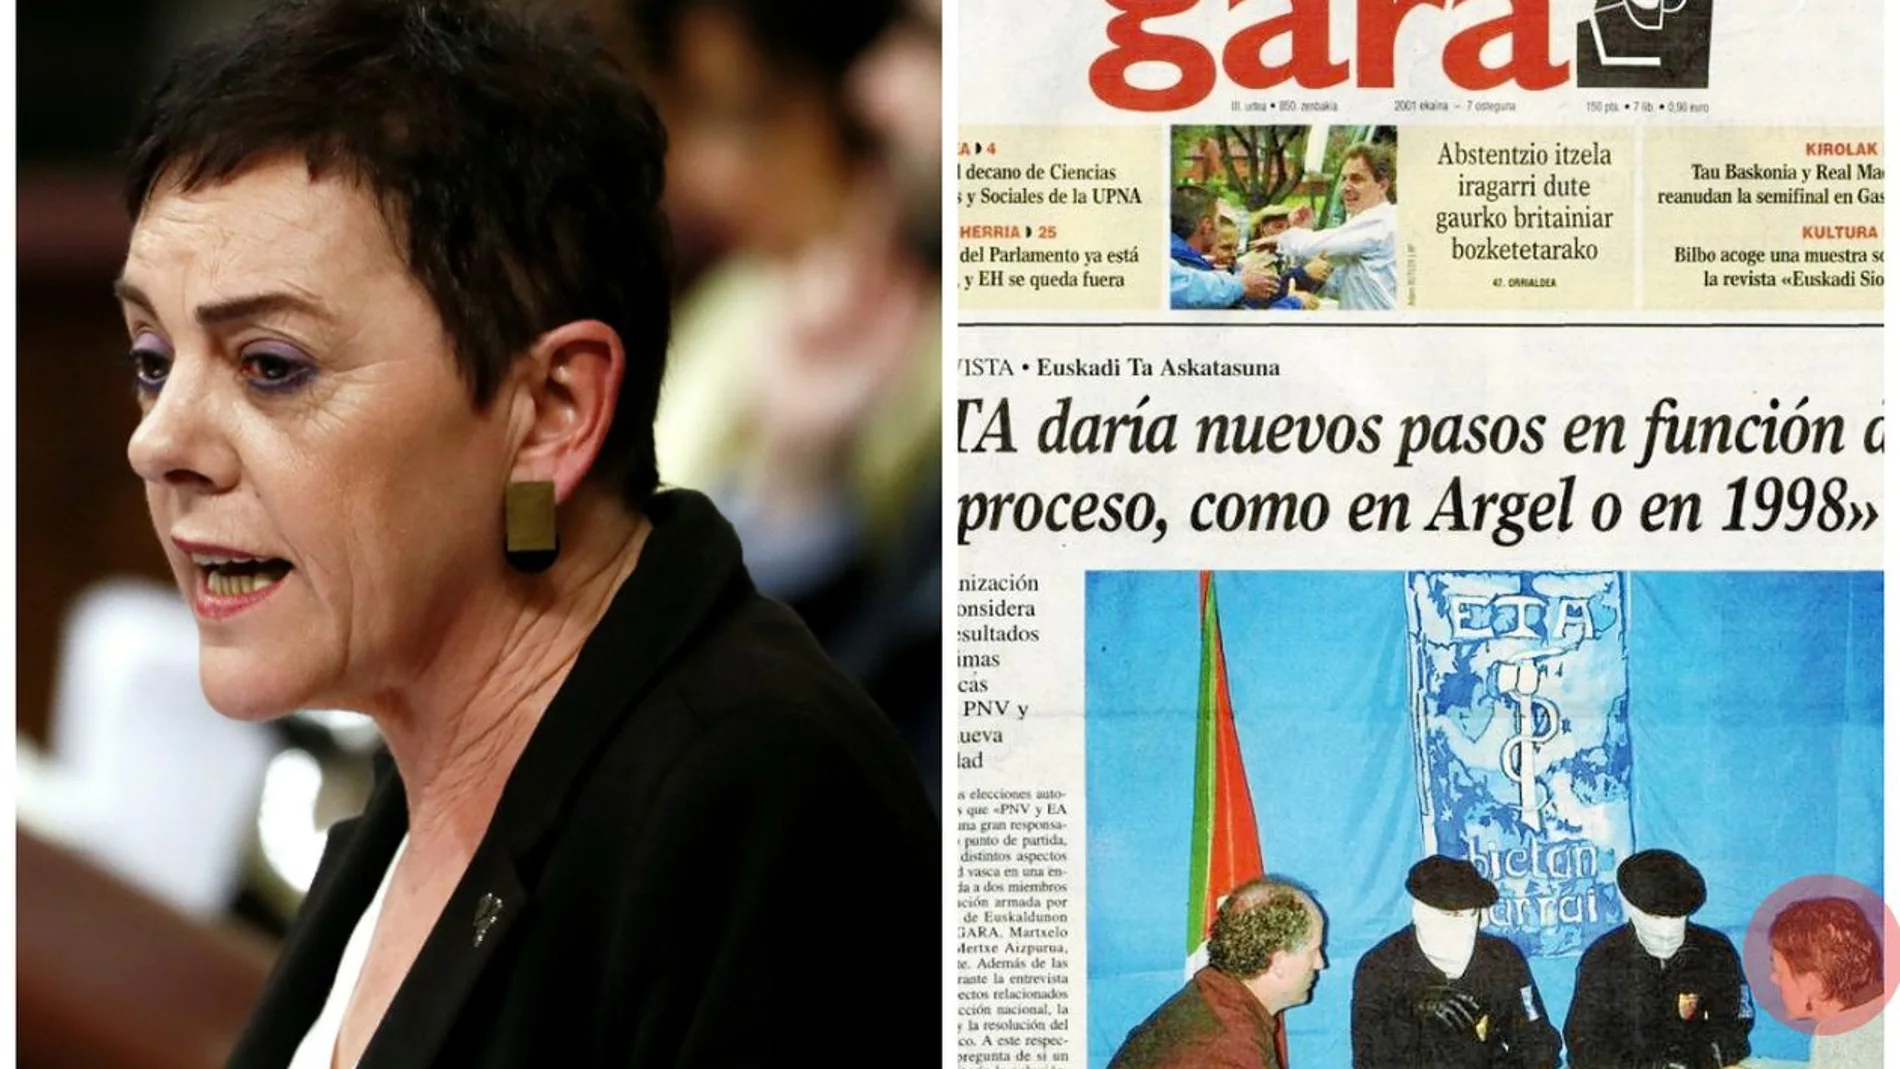 A la izquierda, Mertxe Aizpurua en el Congreso. A la derecha, la portada de Gara del 7 de junio de 2001 en la que la ahora portavoz de Bildu entrevistó a dos miembros de ETA.